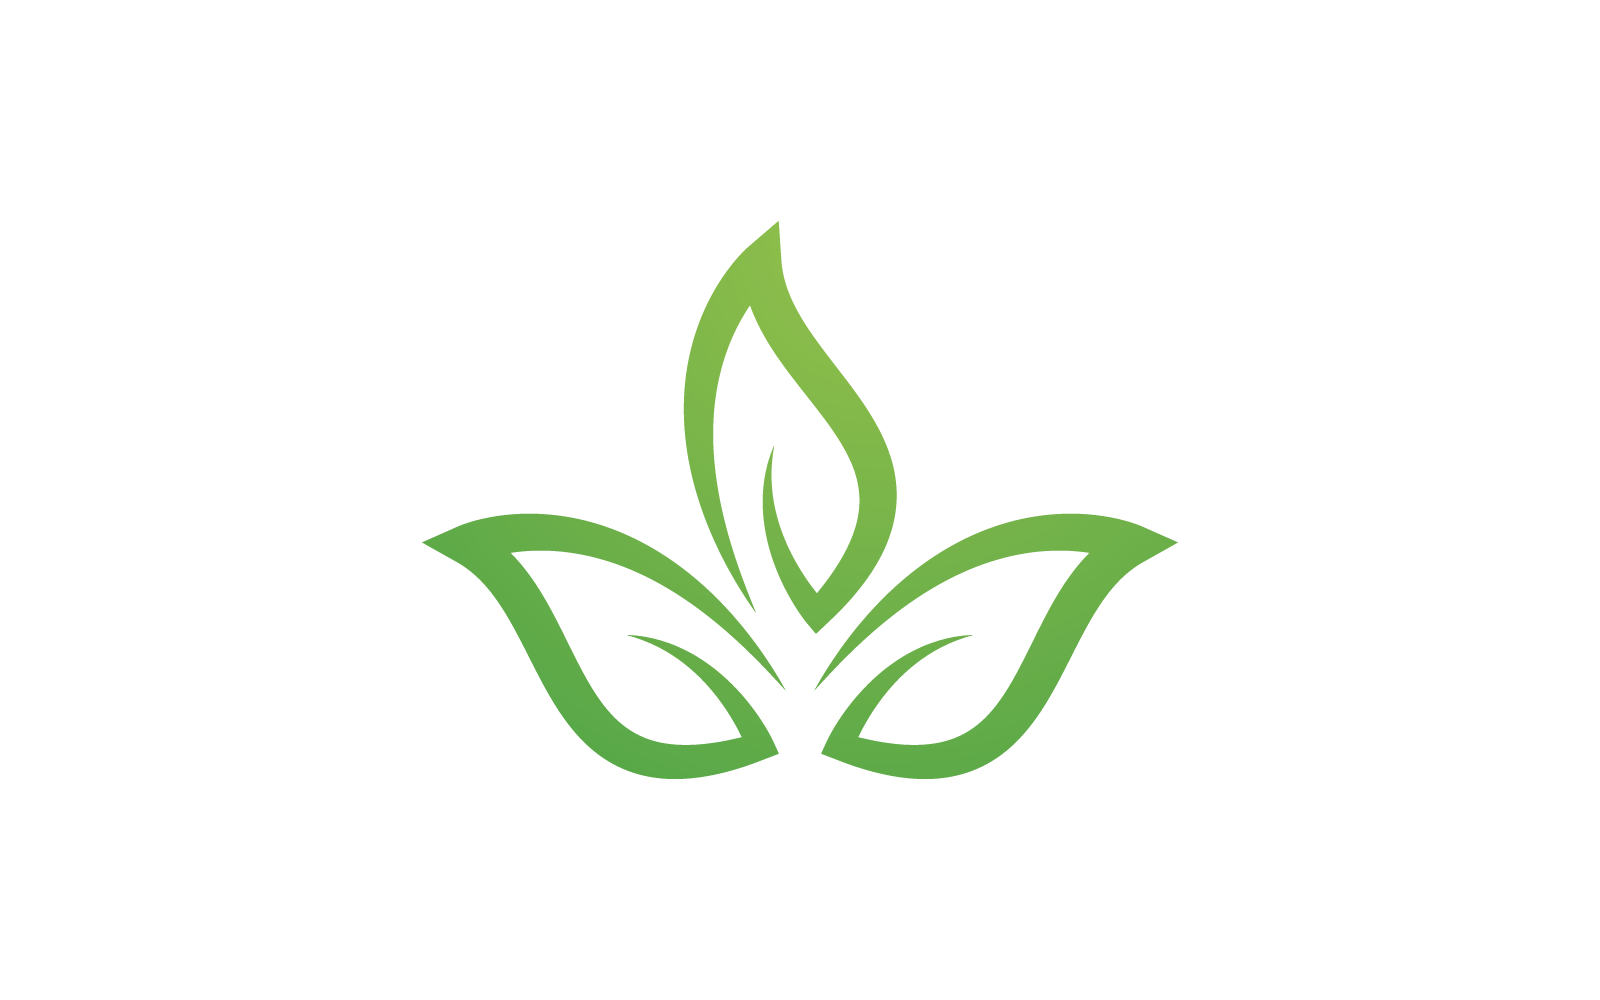 Green leaf illustration nature logo design template Logo Template